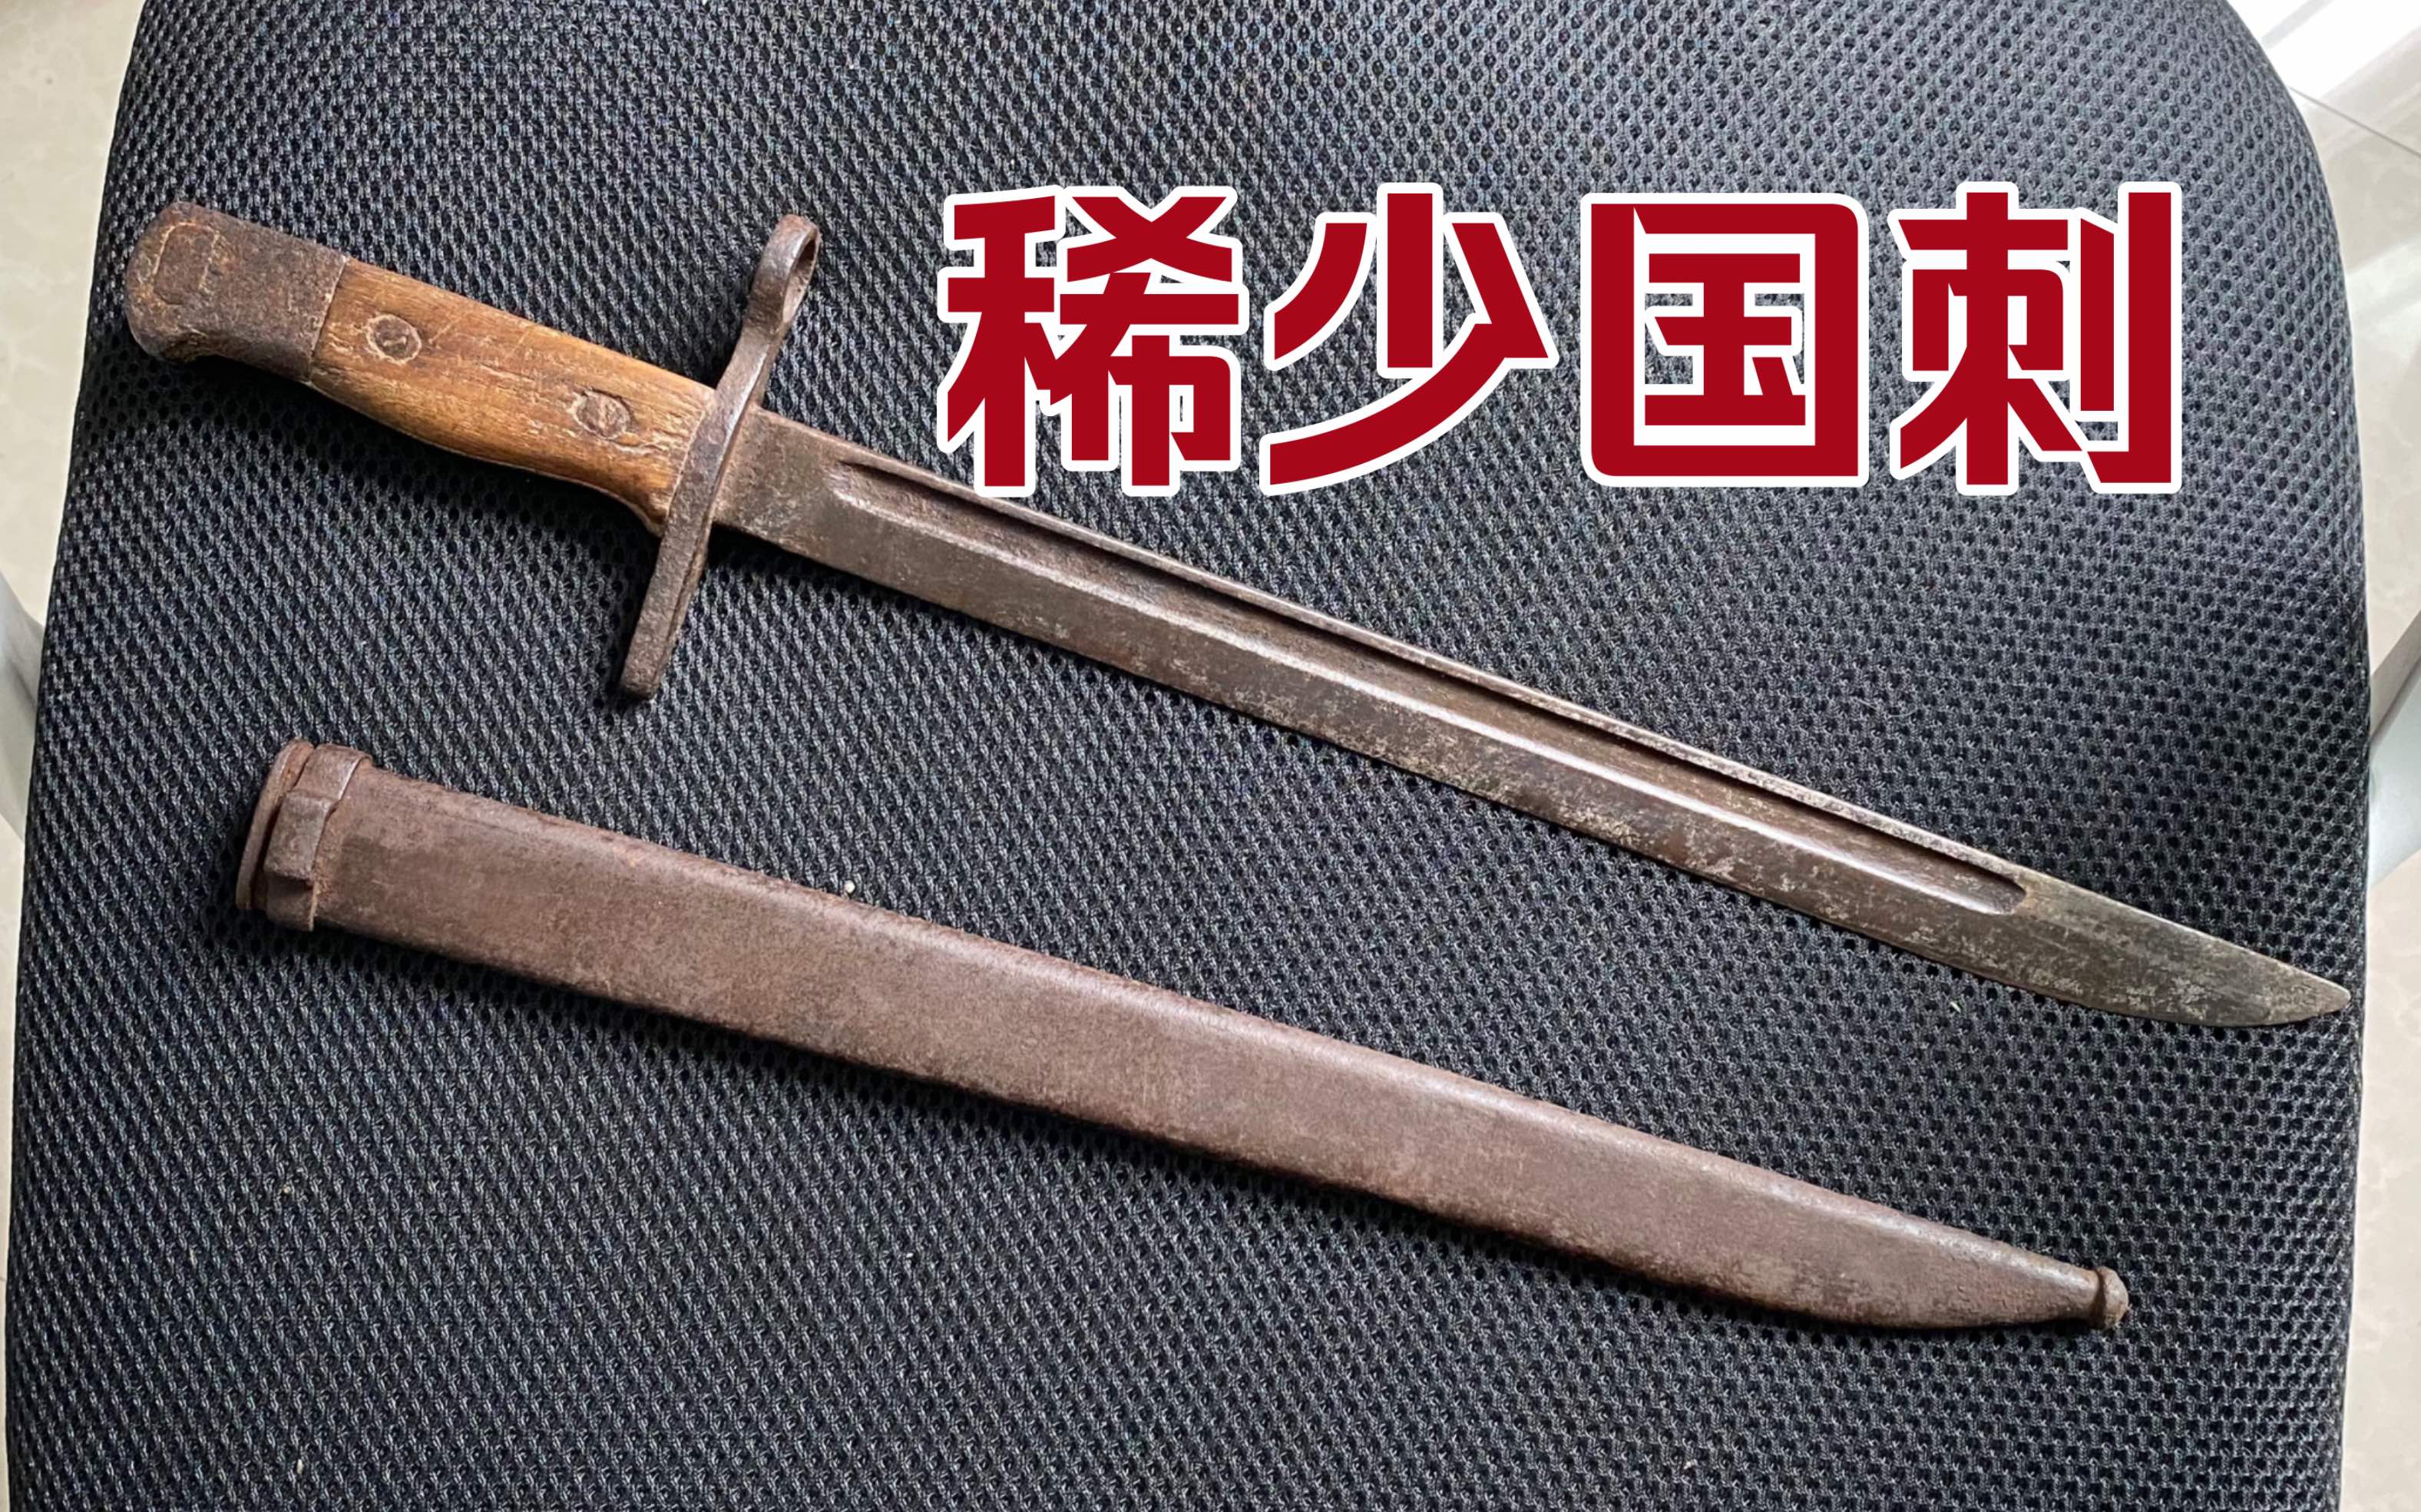 非常稀少的国造日本19式刺刀牛屎厂标很多人都没见过